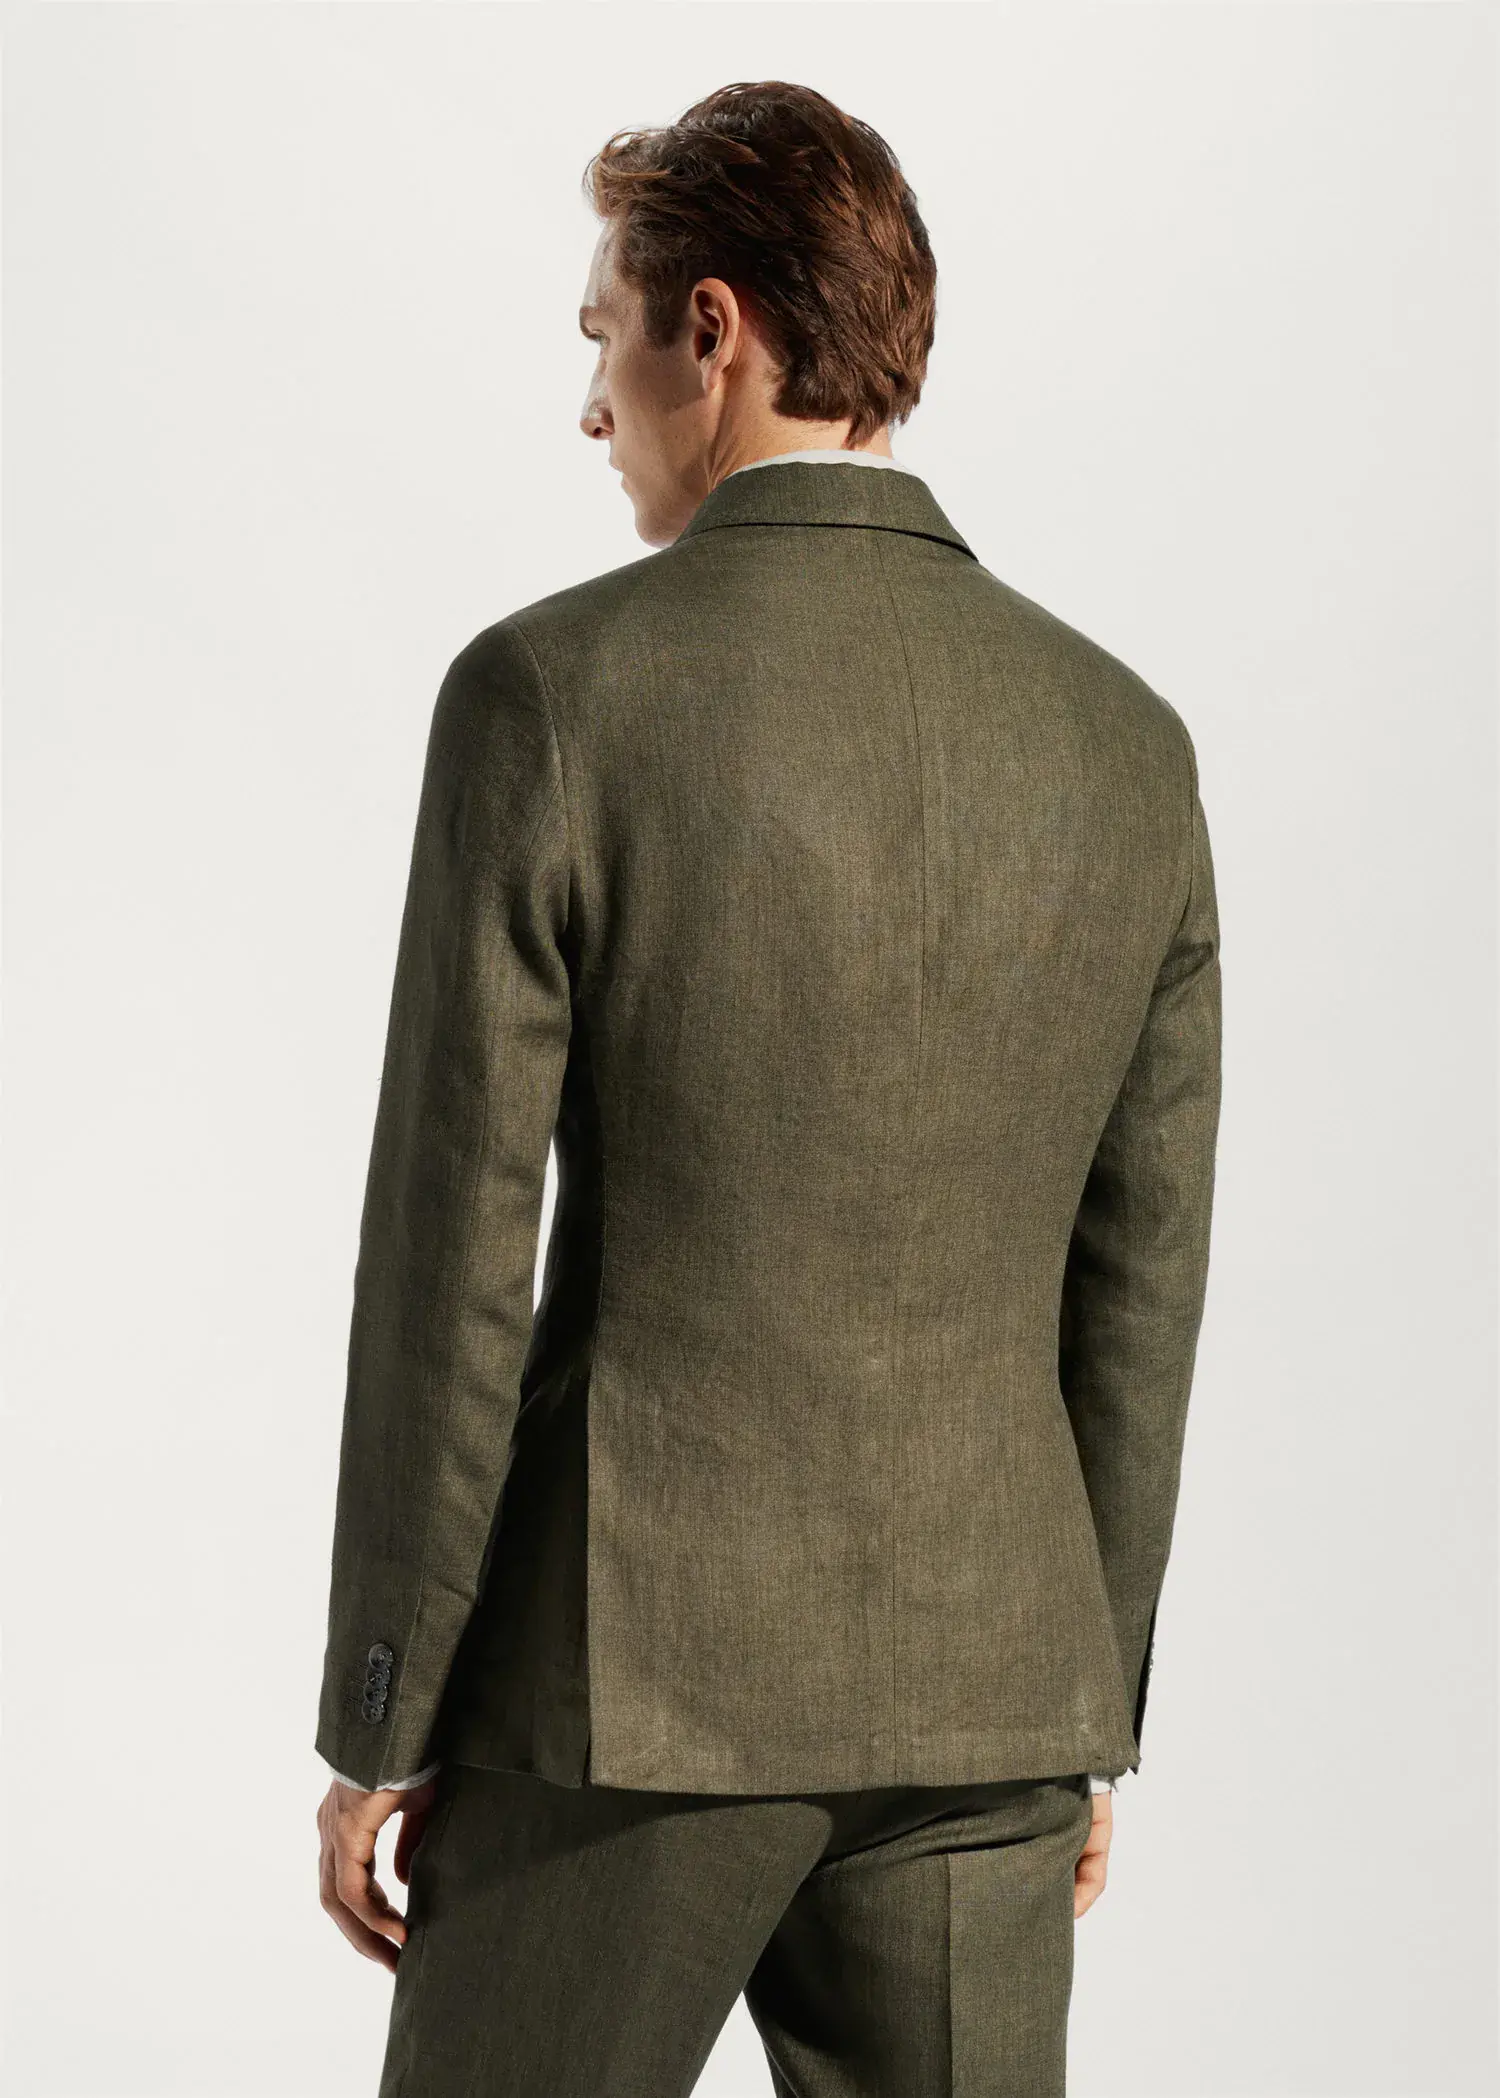 Mango 100% linen suit blazer. a man wearing a suit jacket and pants. 